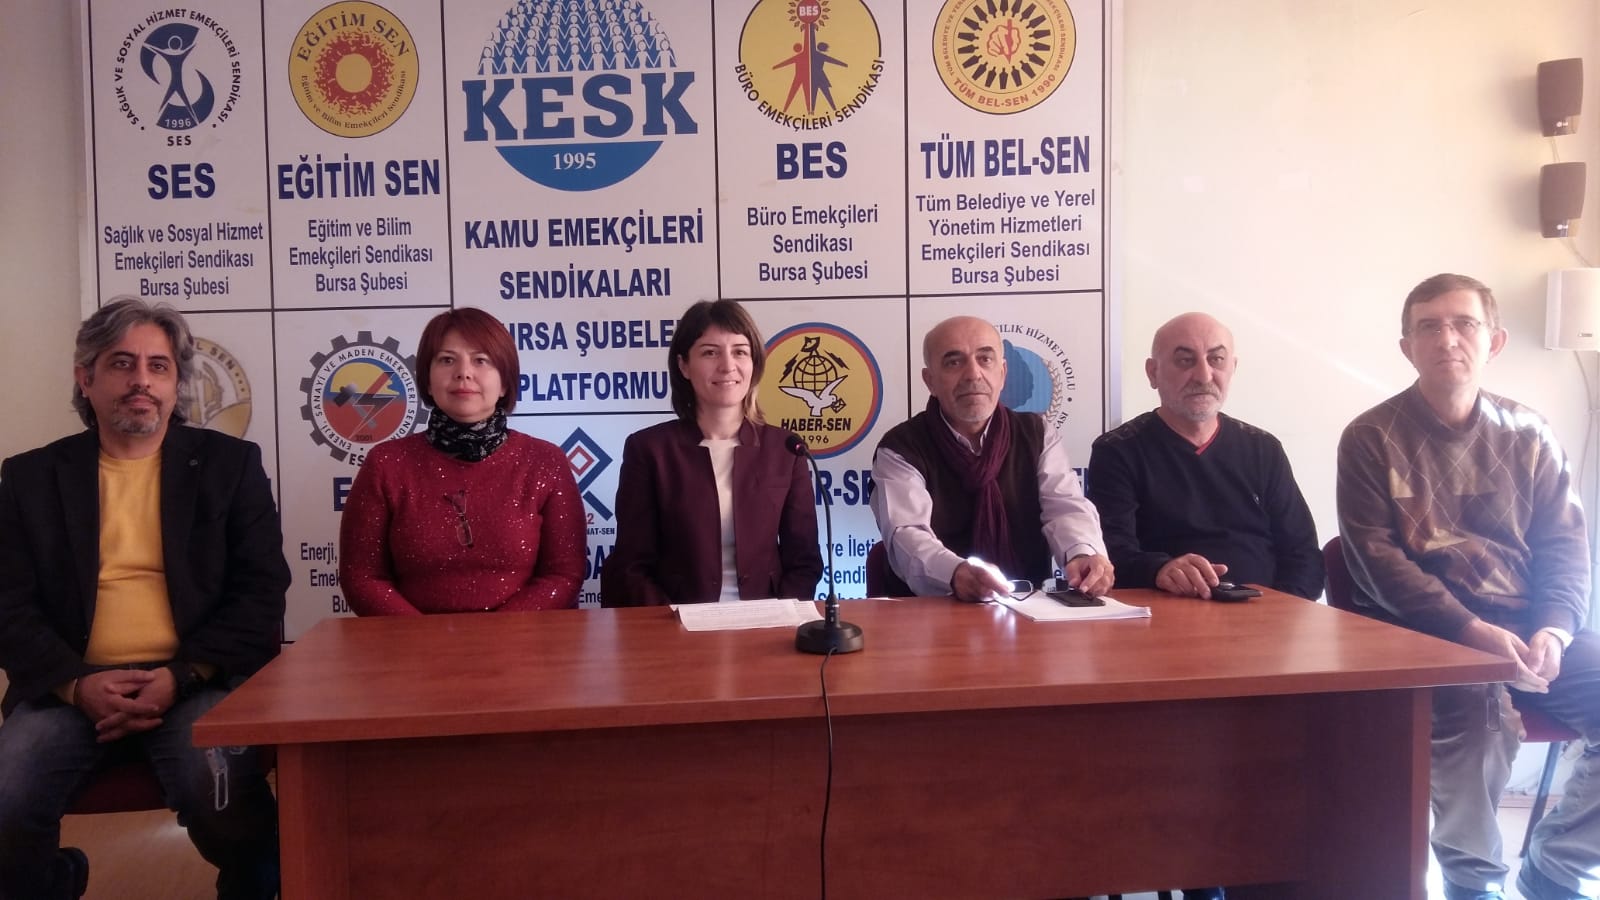 Bursa: KESK 23.Yılında Yoksullaşmaya, İşsizliğe, Güvencesizliğe Karşı Mücadelesini Kararlılıkla Sürdürüyor